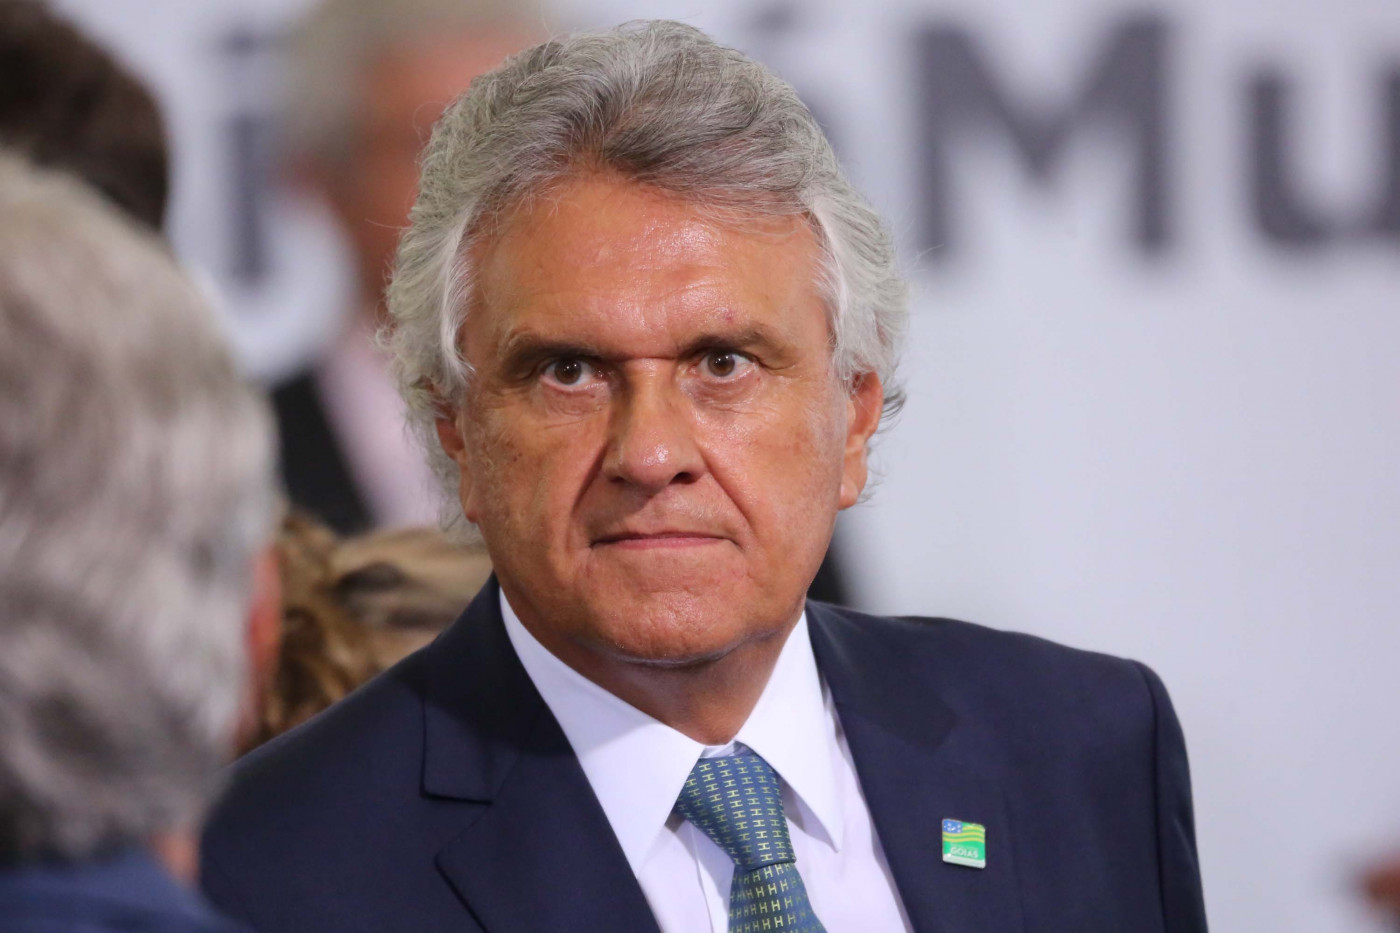 Caiado foi reeleito governador em Goiás